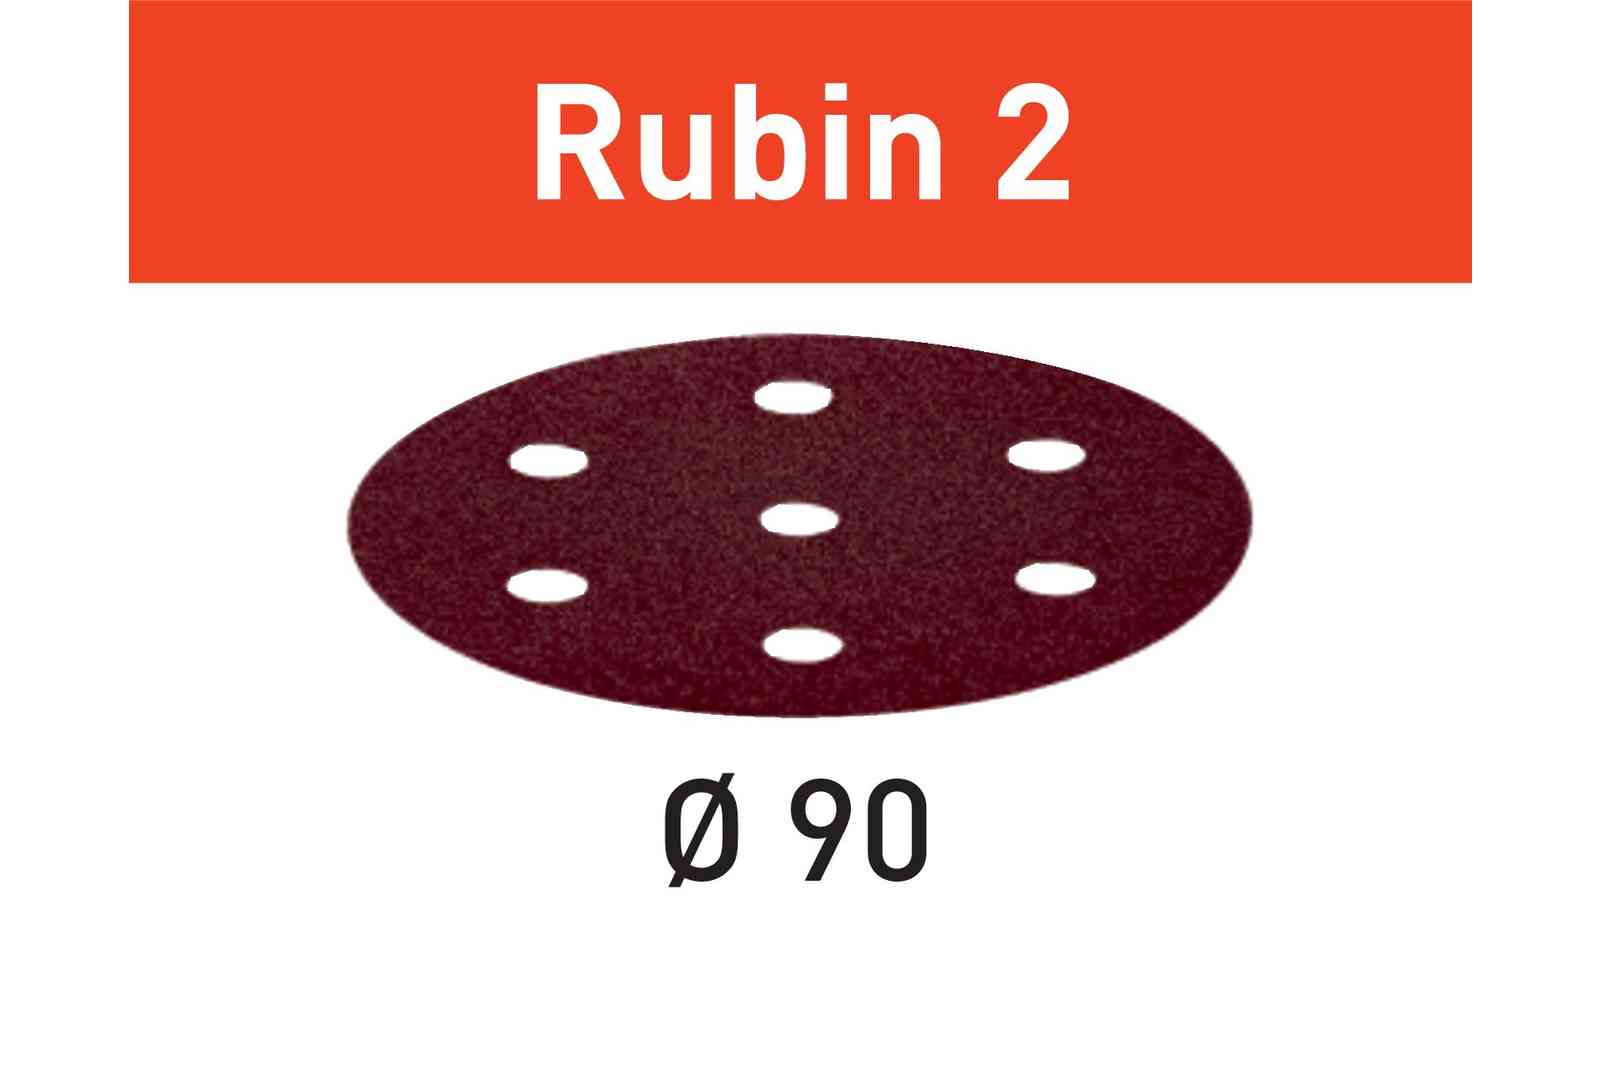 FESTOOL -  Abrasivo RUBIN 2 disco carta uso automatico per levigatura legno - metallo - resine - dimensioni Ø 90 - grana 100 - formato 6 FORI + 1 - note PER RO 90 DX